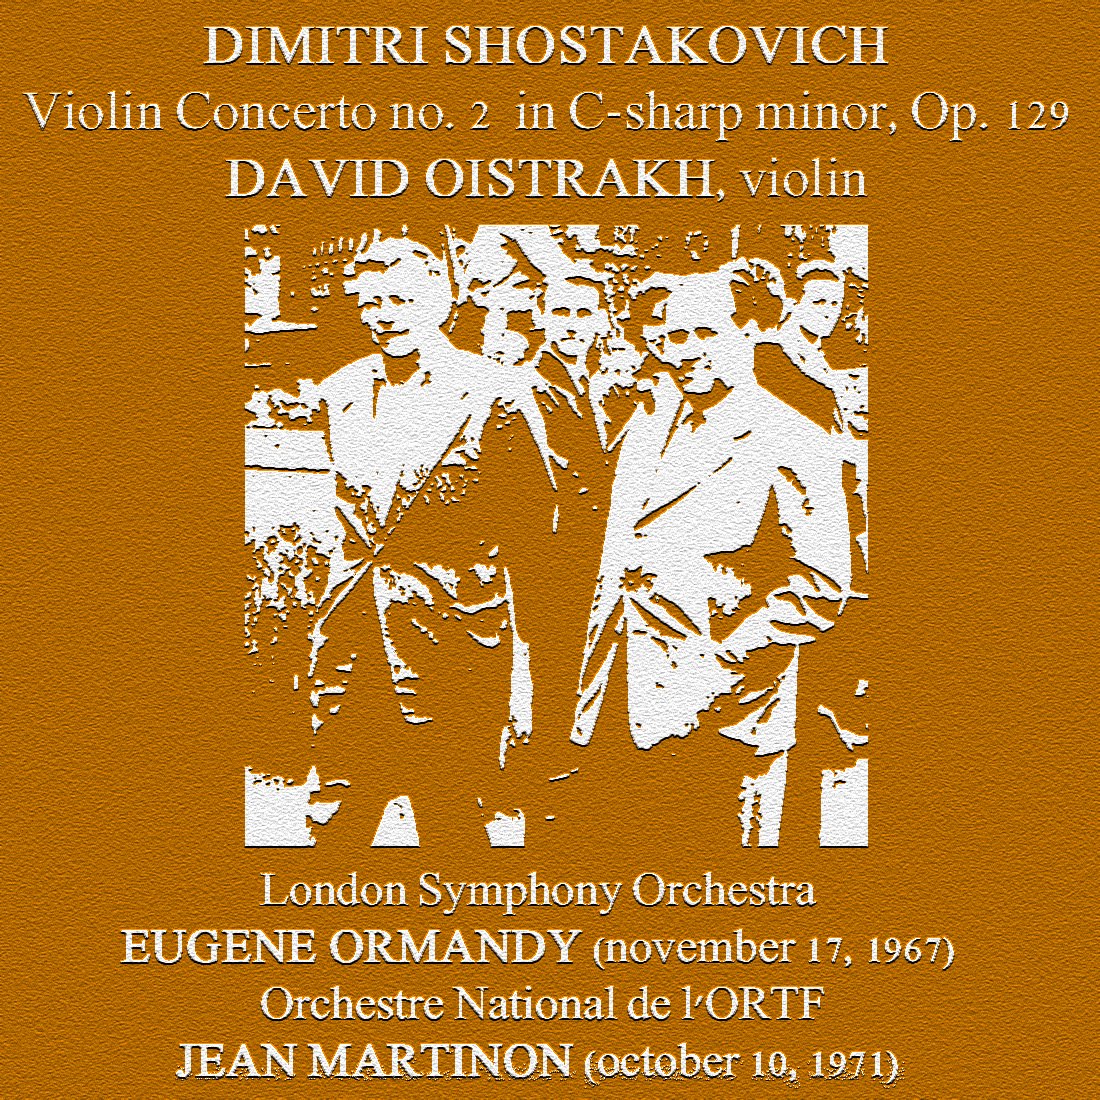 Violin concerto no 2. Famous Violin Concertos. Rajicic Violin Concerto no 2 1946.